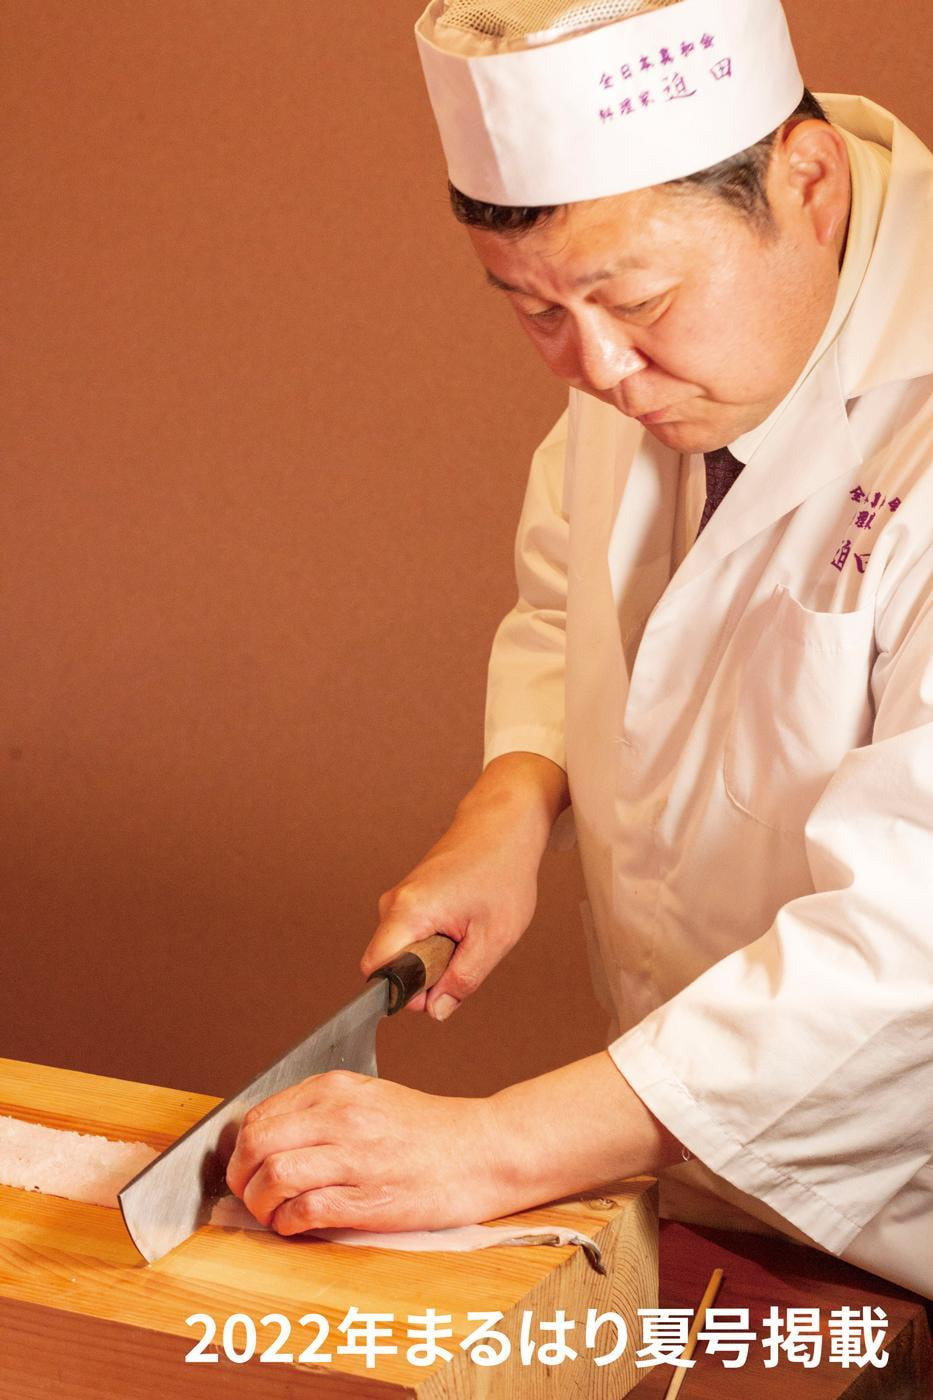 【加古川】訪れる度 感動の味に出会う「料理家迫田」料理を通じて表現する伝統と革新